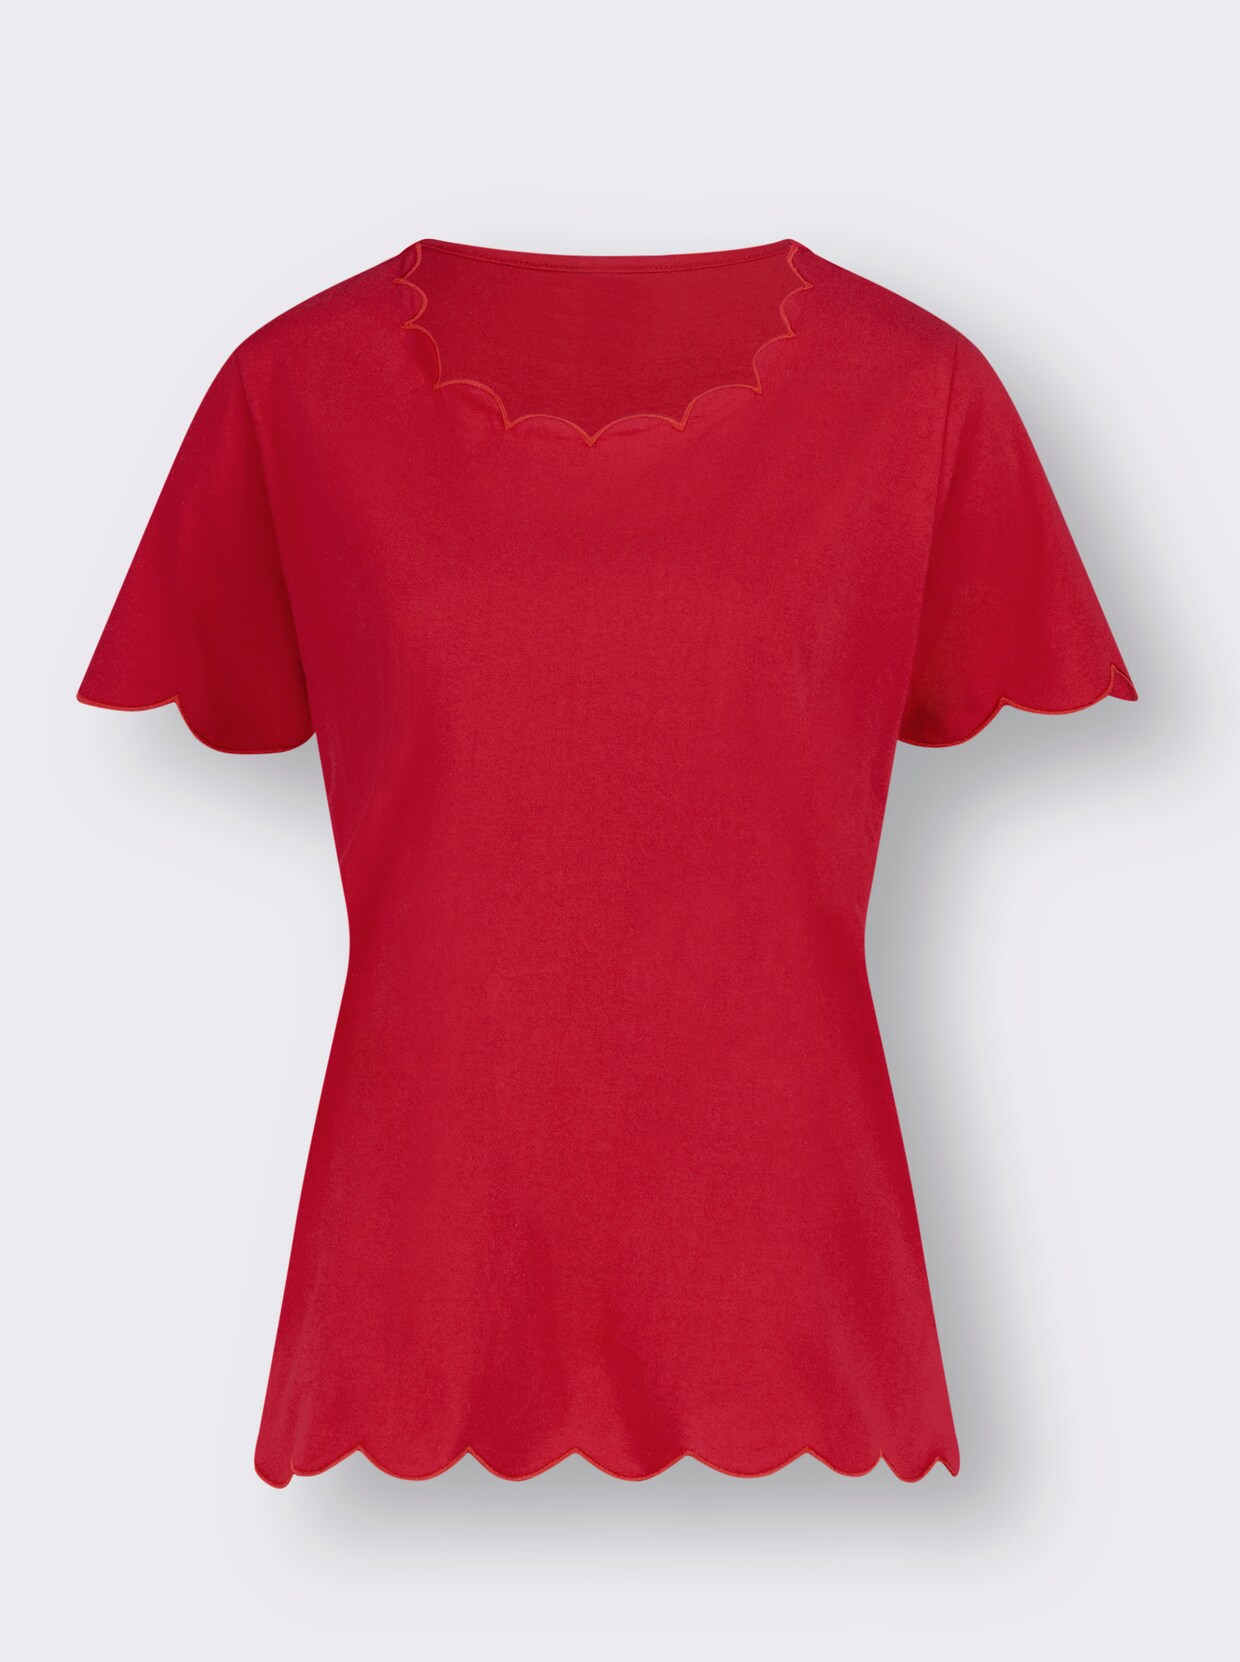 Tričko s krátkým rukávem - červená